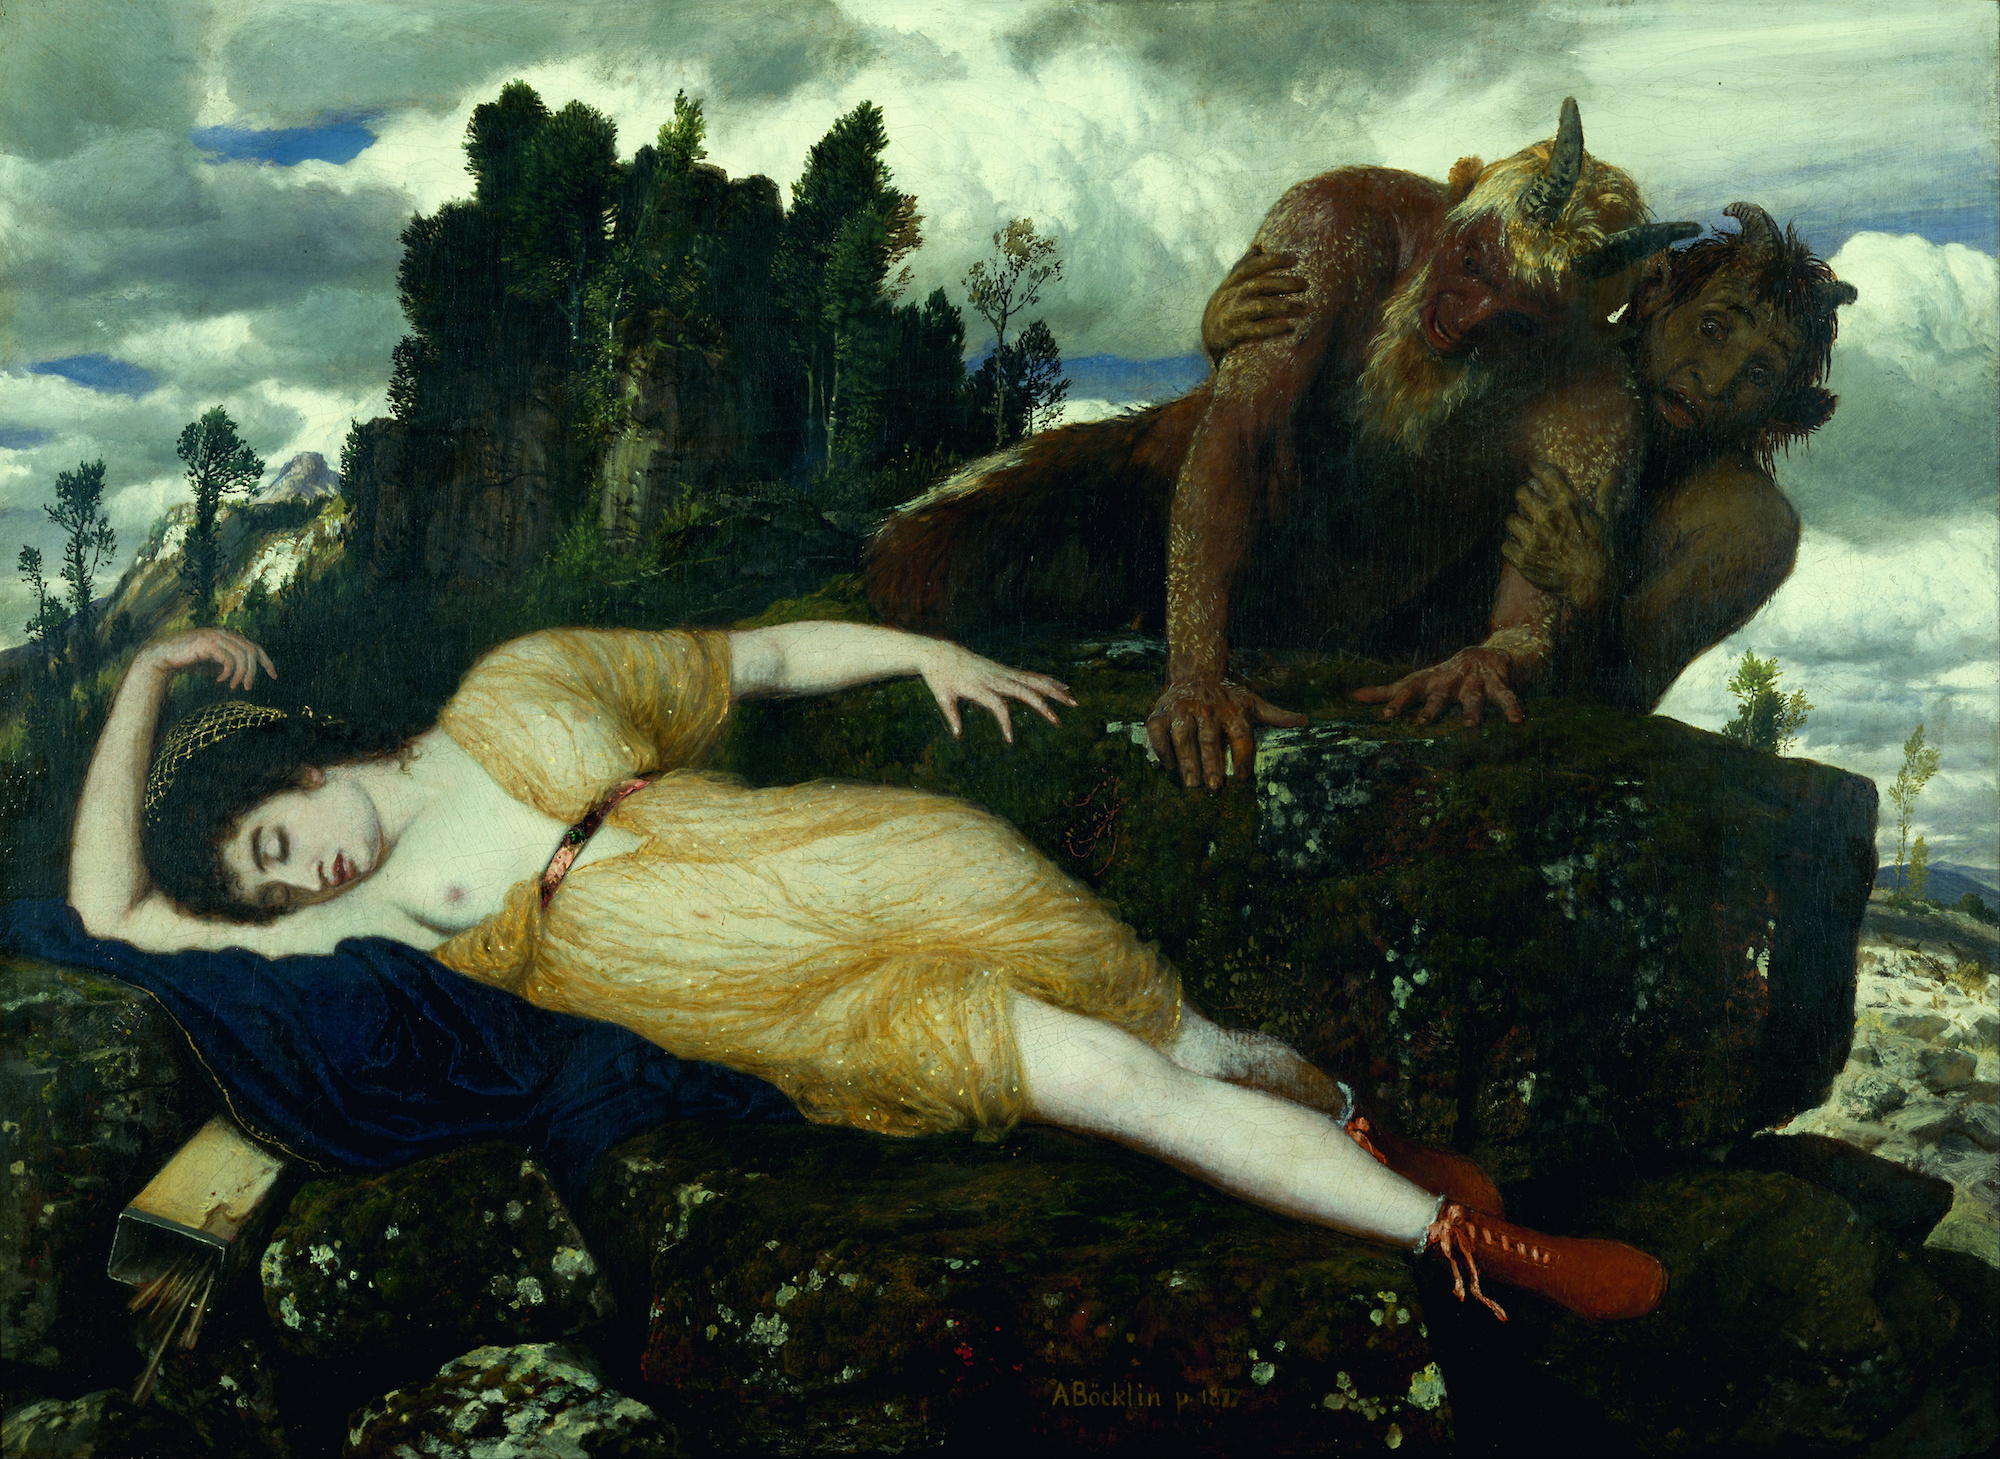 Die schlafende Diana wird von zwei Faunen beobachtet by Arnold Böcklin - 1877 - 105 x 77.4 cm Museum Kunstpalast